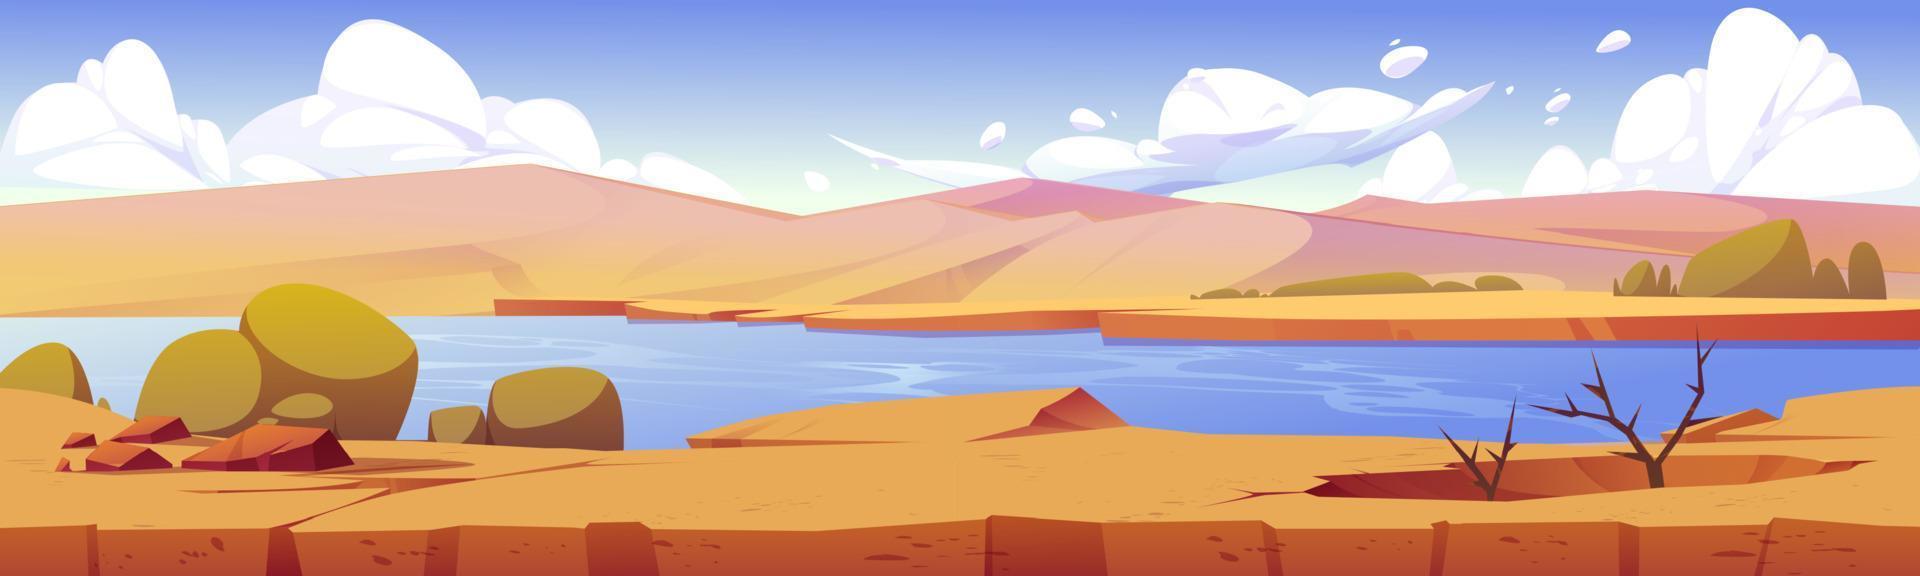 Landschaft auf Spielebene der afrikanischen Wüste mit Oase vektor